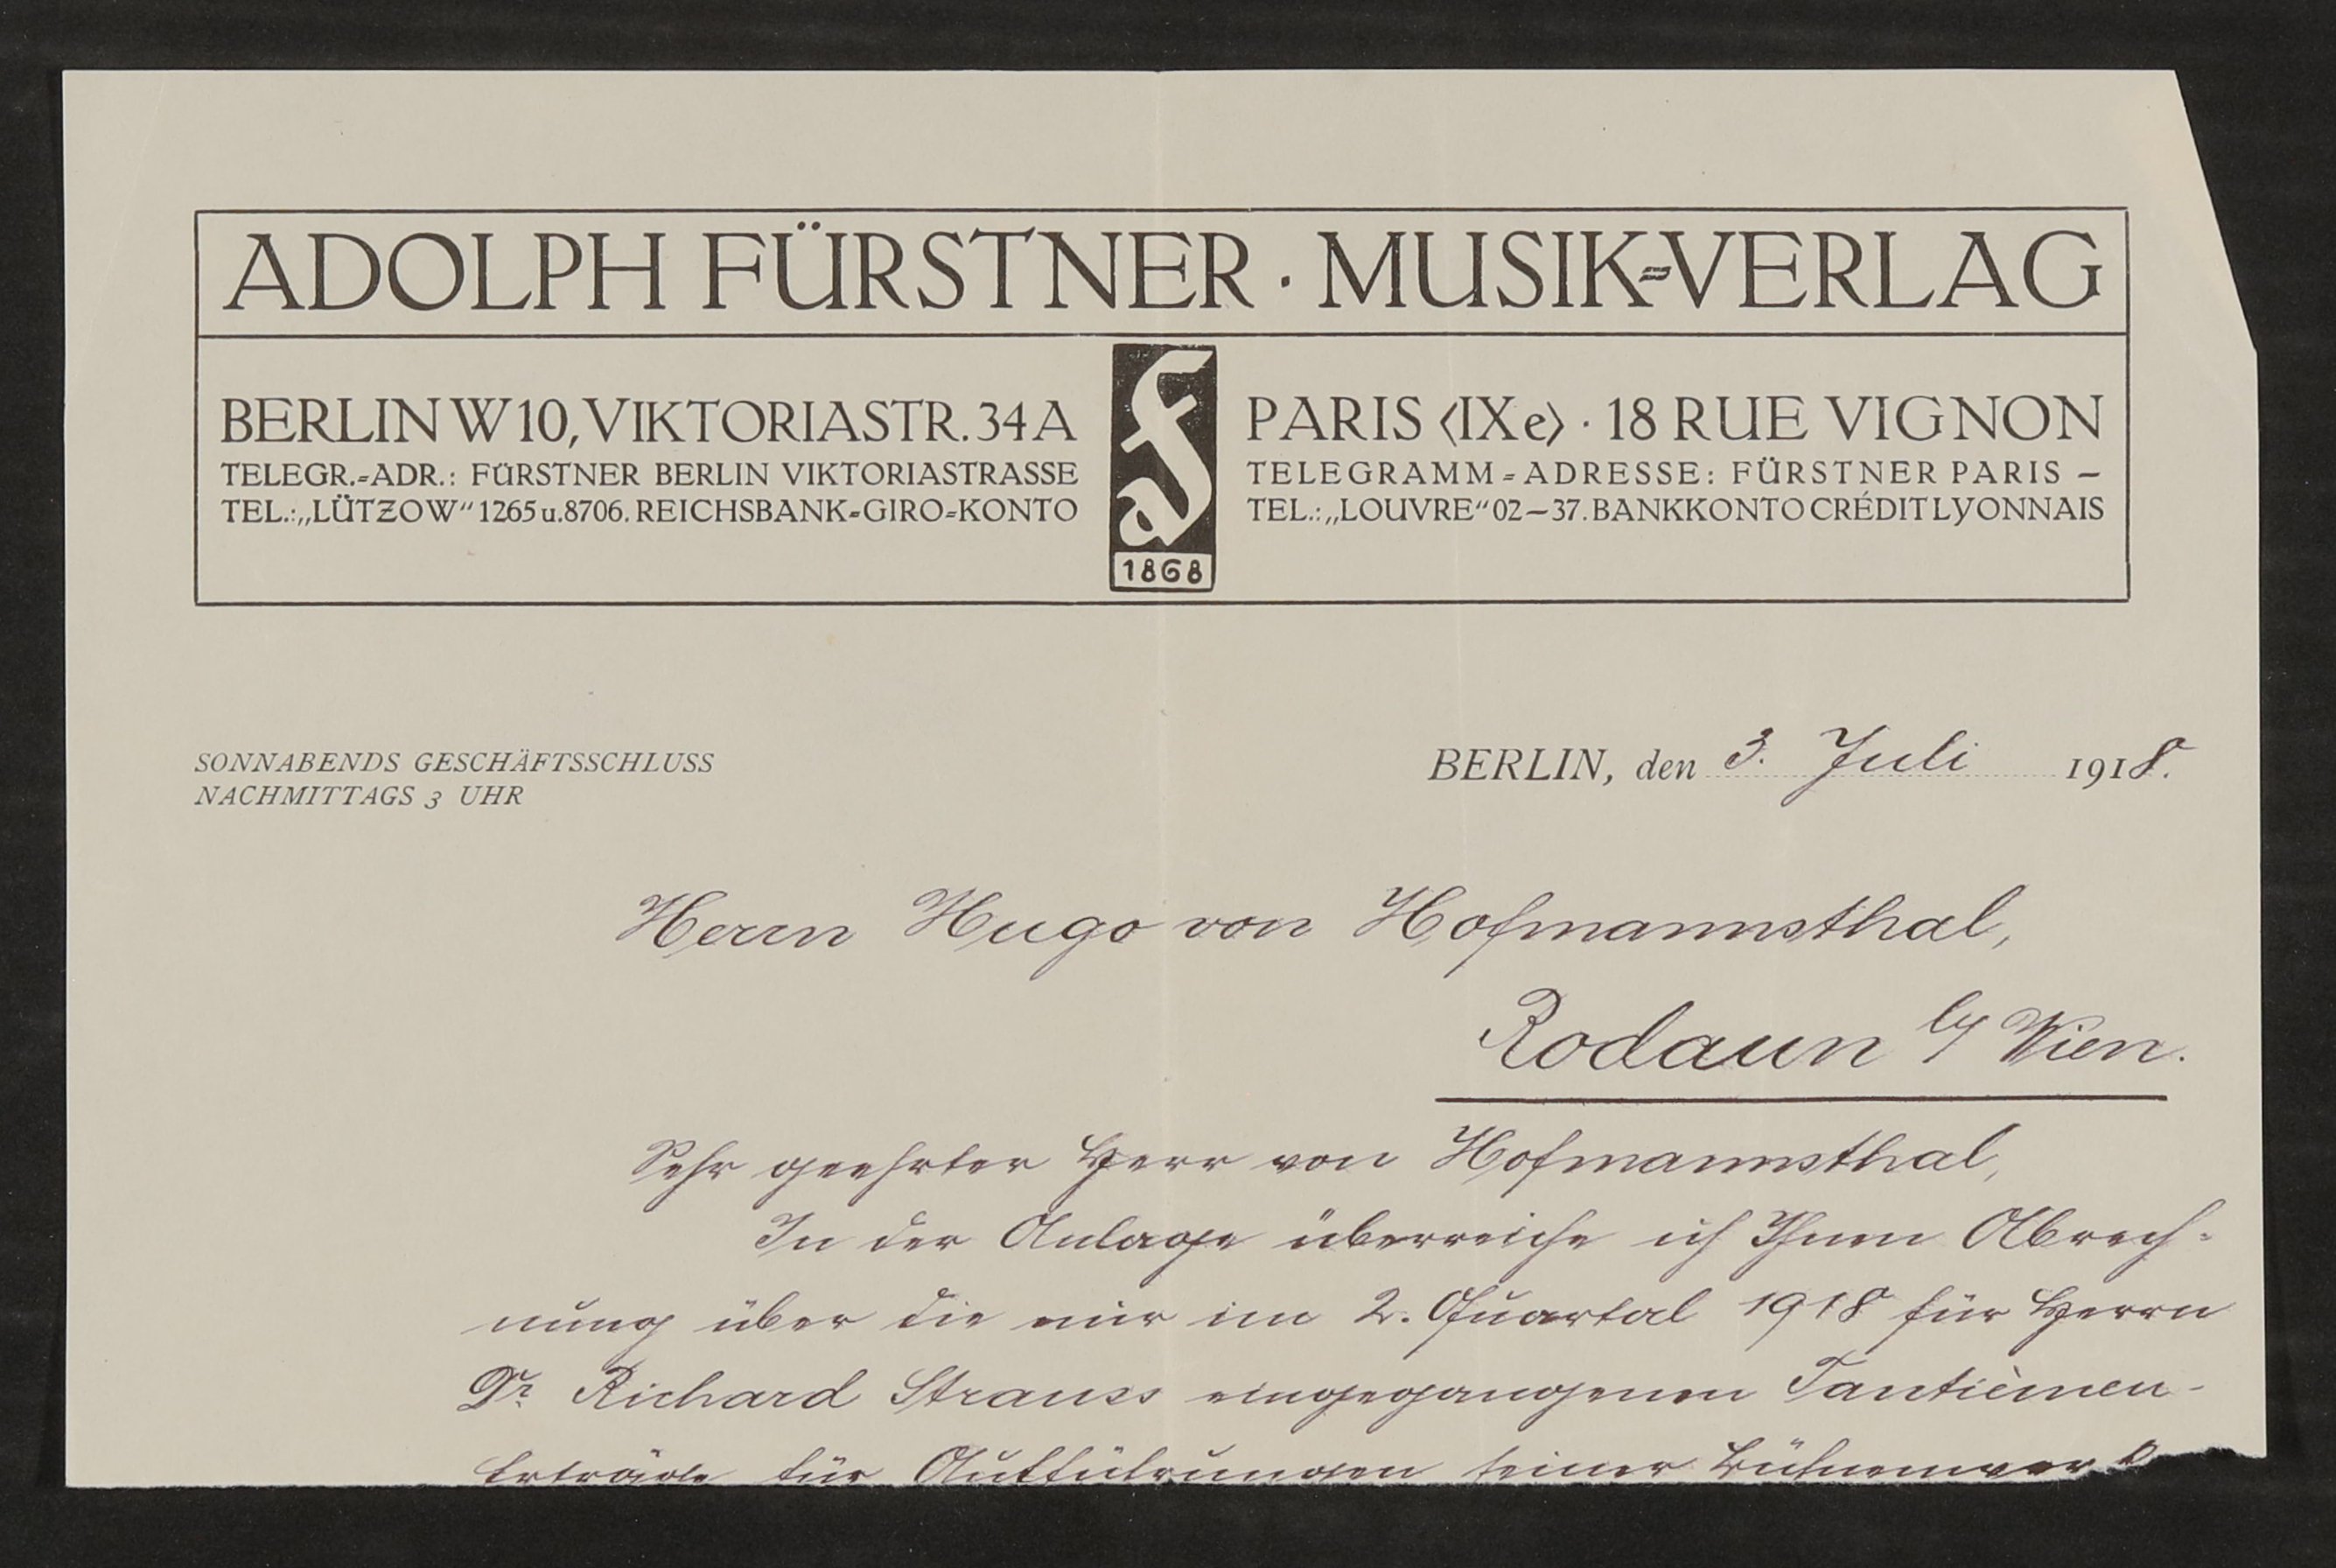 Material zu Hugo von Hofmannsthal: Tantiemenabrechnungen, Rechnungen (Freies Deutsches Hochstift / Frankfurter Goethe-Museum Public Domain Mark)